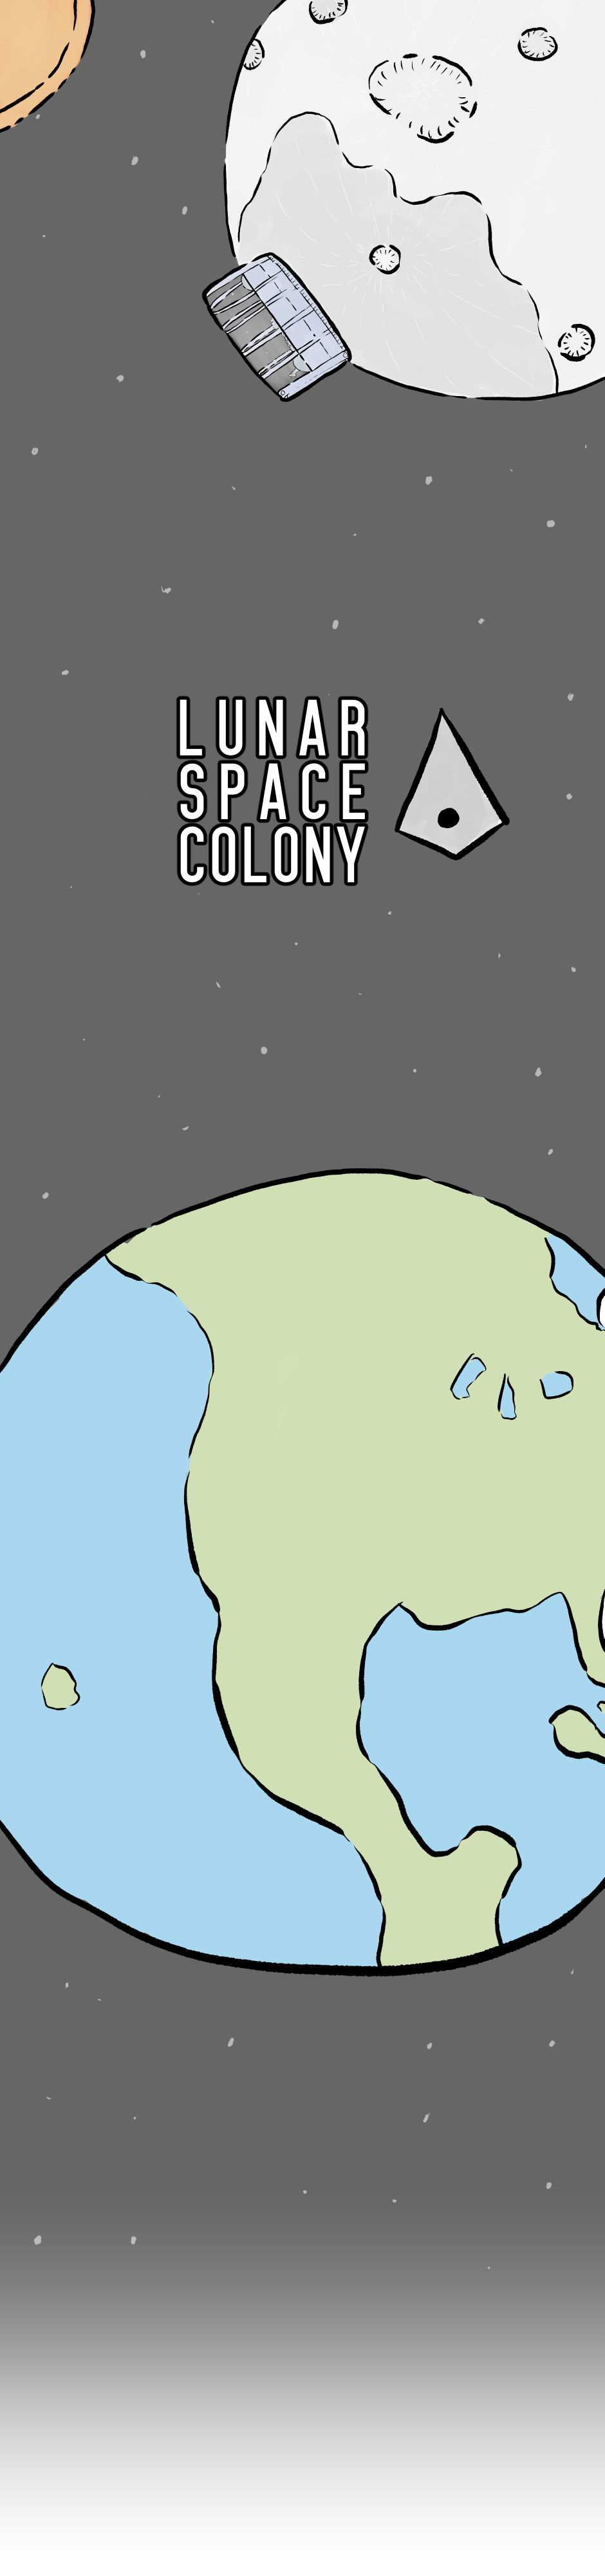 Lunar Space Colony - Episode 01, Part 01